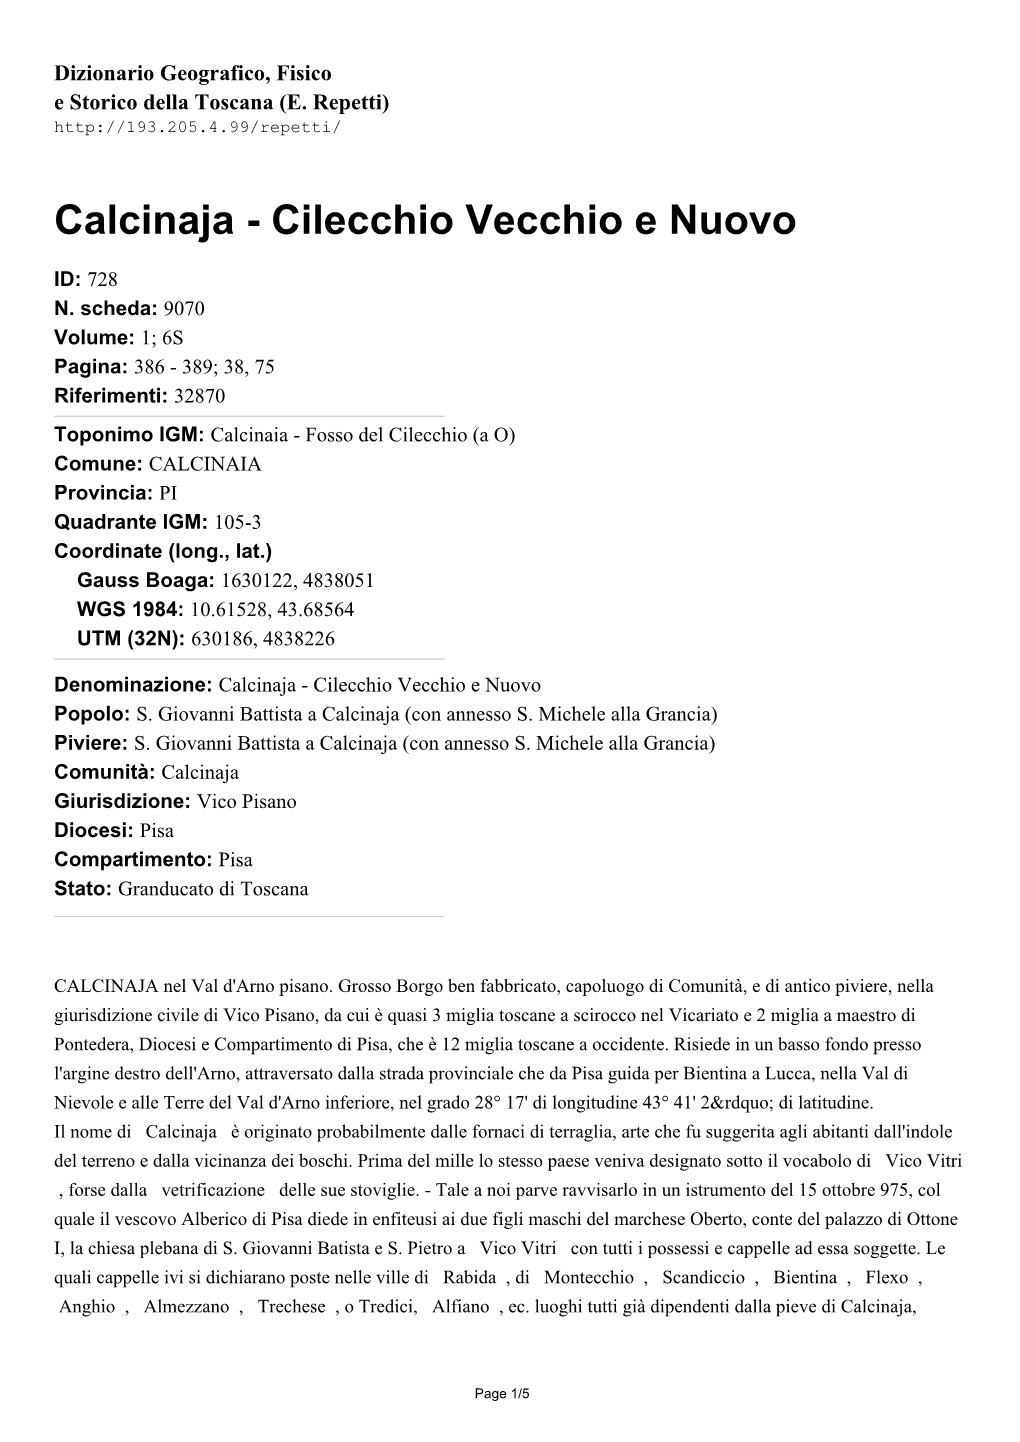 Calcinaja - Cilecchio Vecchio E Nuovo